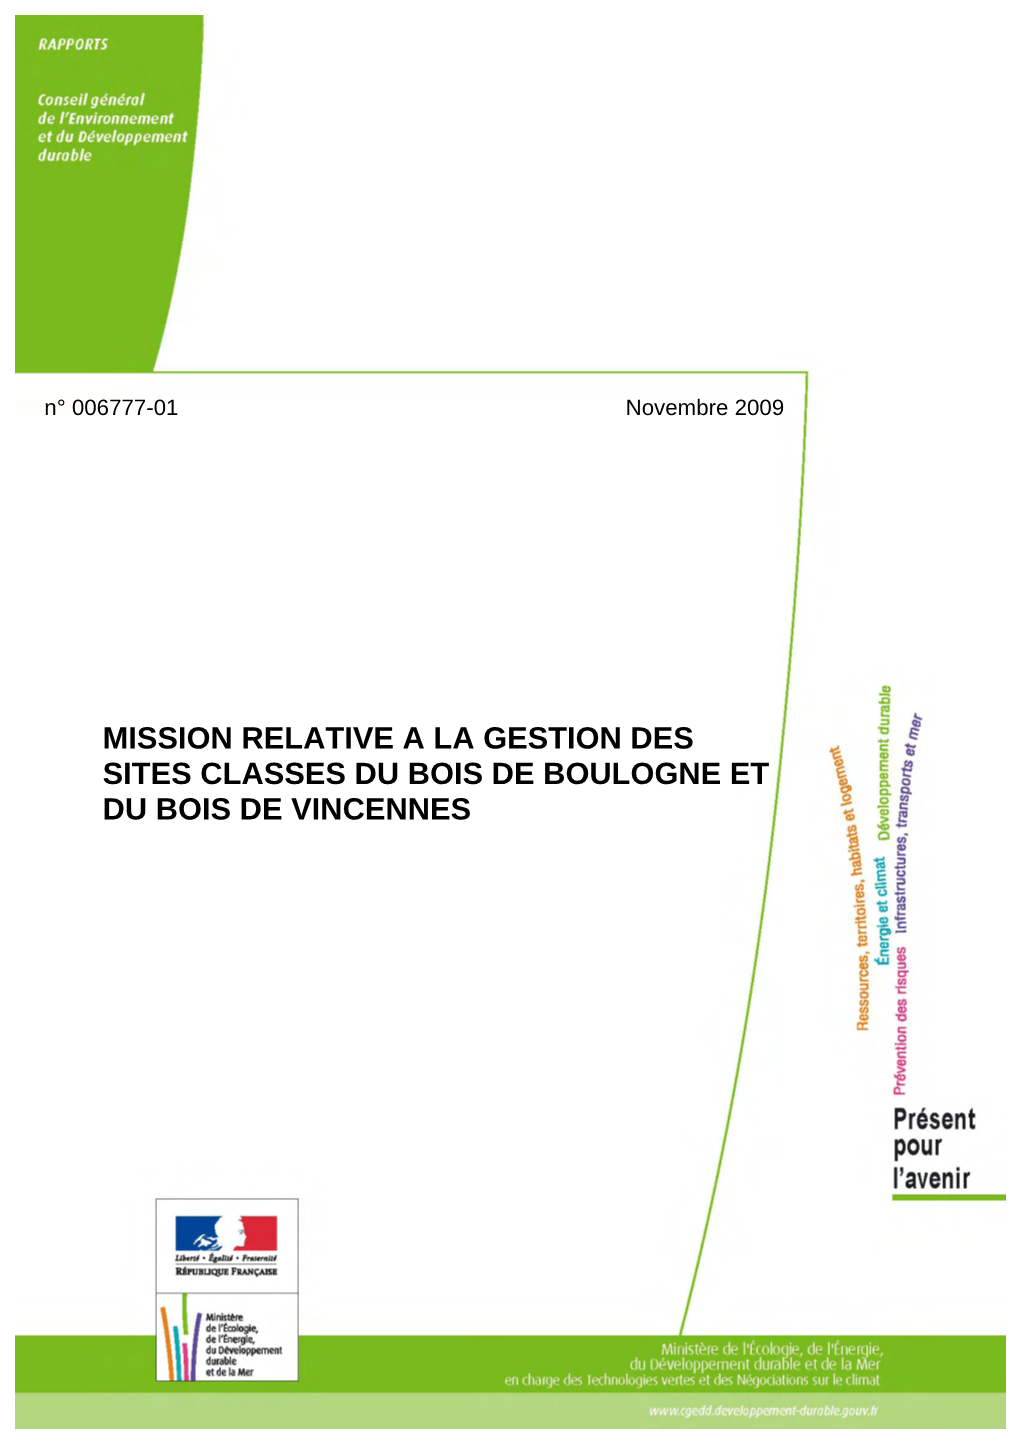 Mission Relative a La Gestion Des Sites Classes Du Bois De Boulogne Et Du Bois De Vincennes